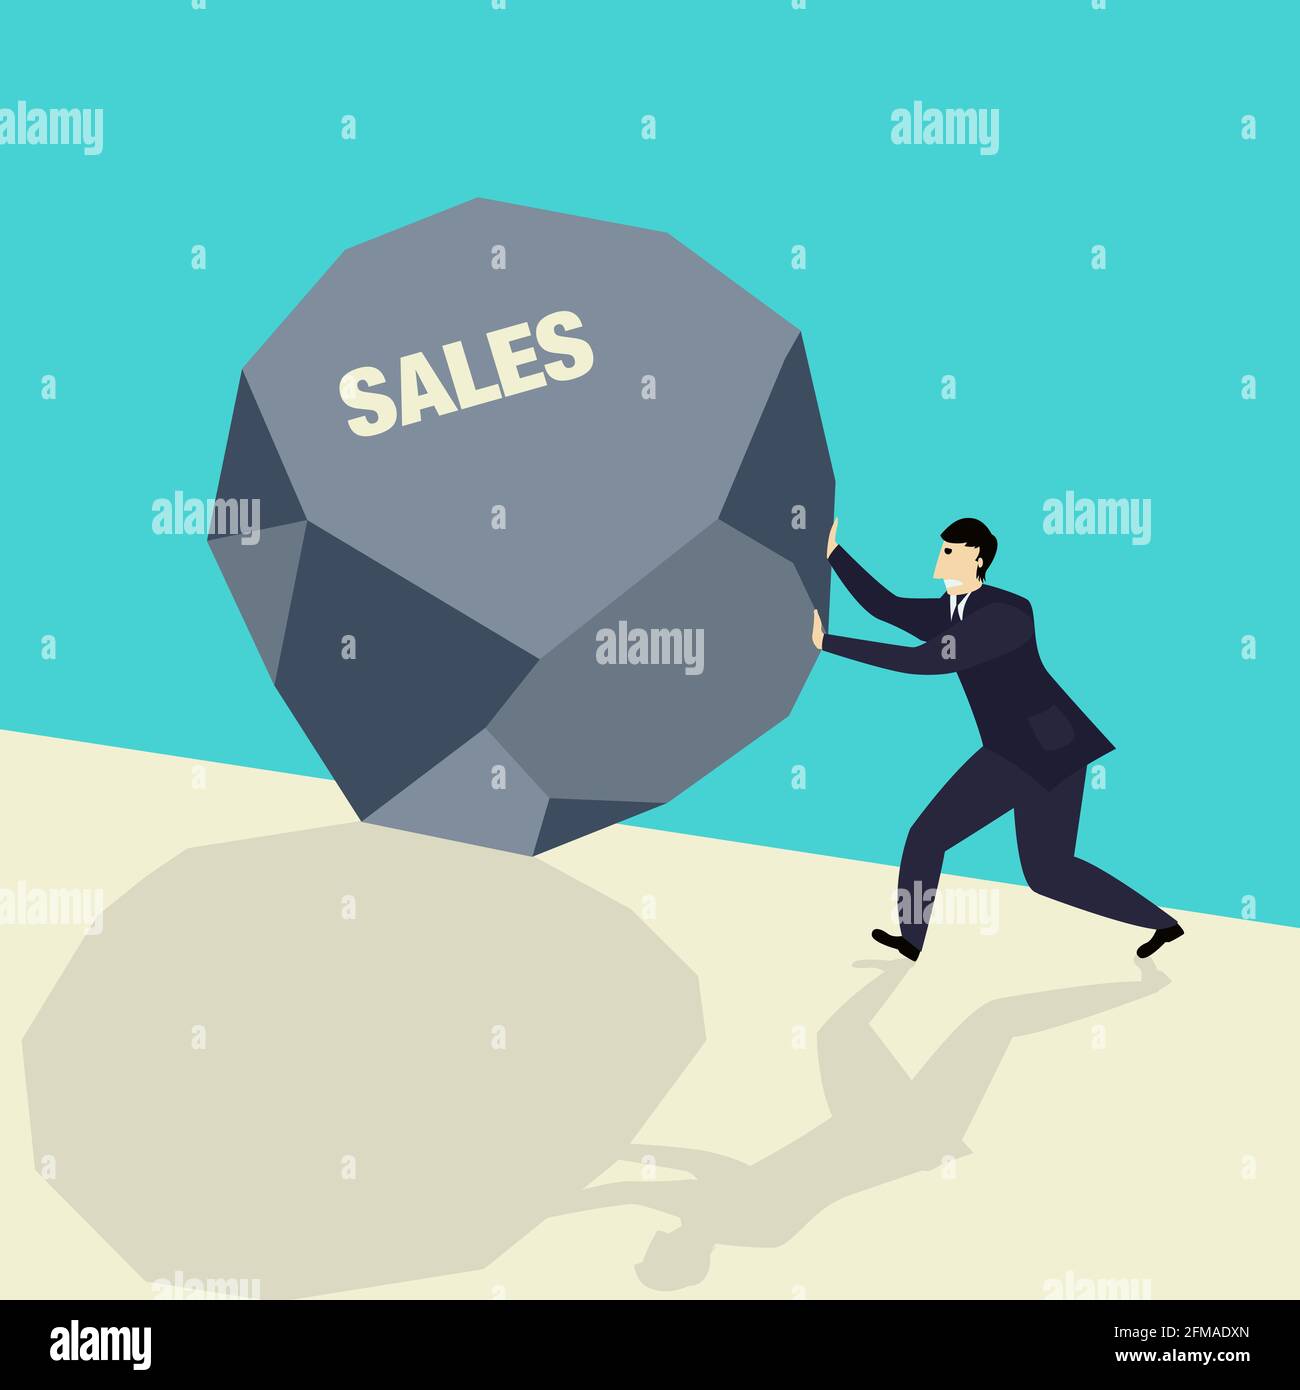 Business Concept Vektor-Illustration eines Geschäftsmanns, der einen großen Stein schiebt Symbolisiert die Steigerung der Umsätze auf einem wachsenden Markt Stock Vektor